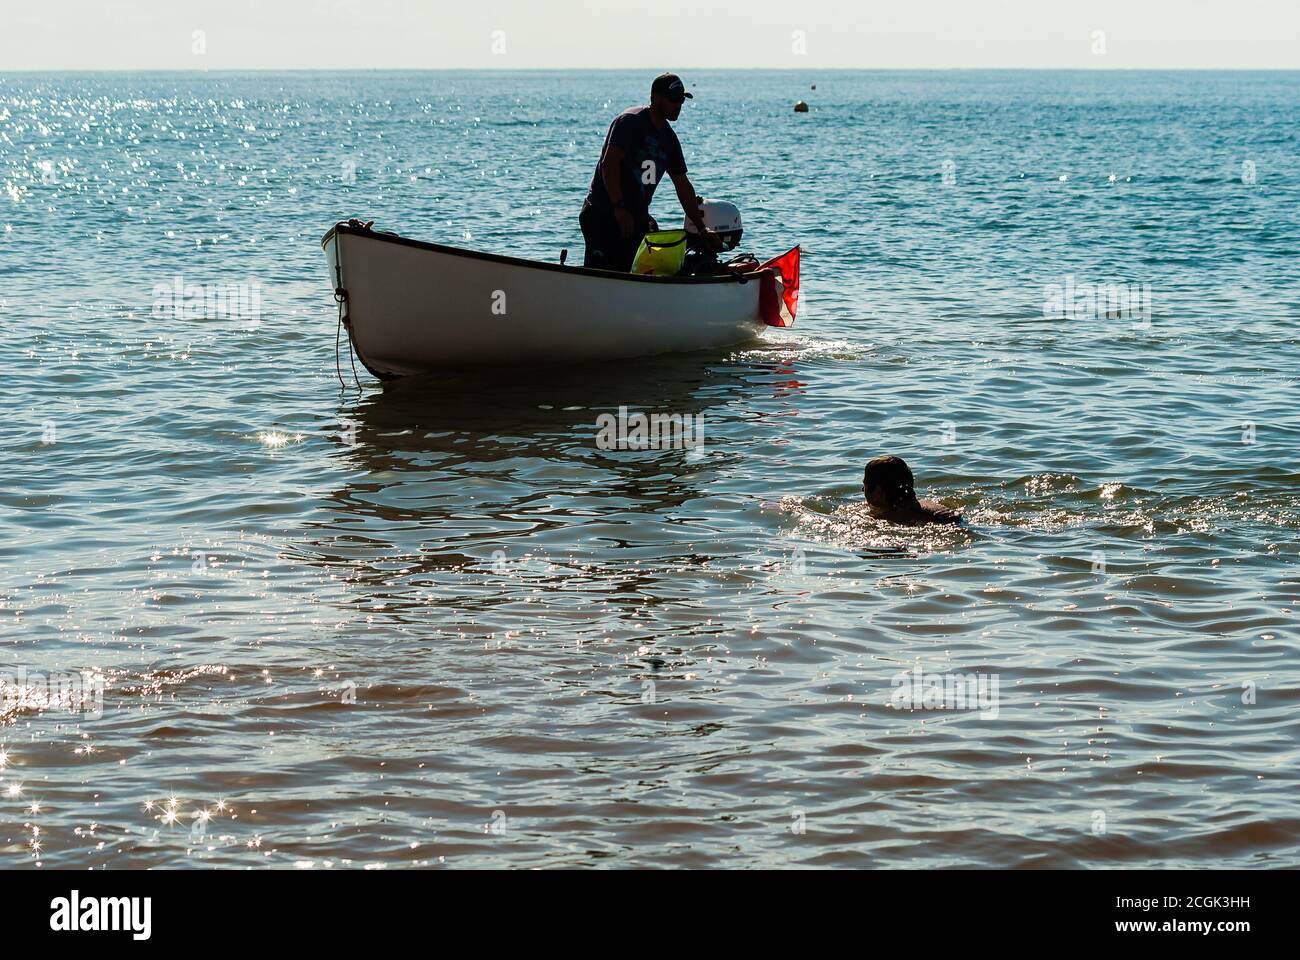 Budleigh Lions Charity Swim. La nage à travers la baie de Budgleigh avec un bateau de soutien en présence. Banque D'Images